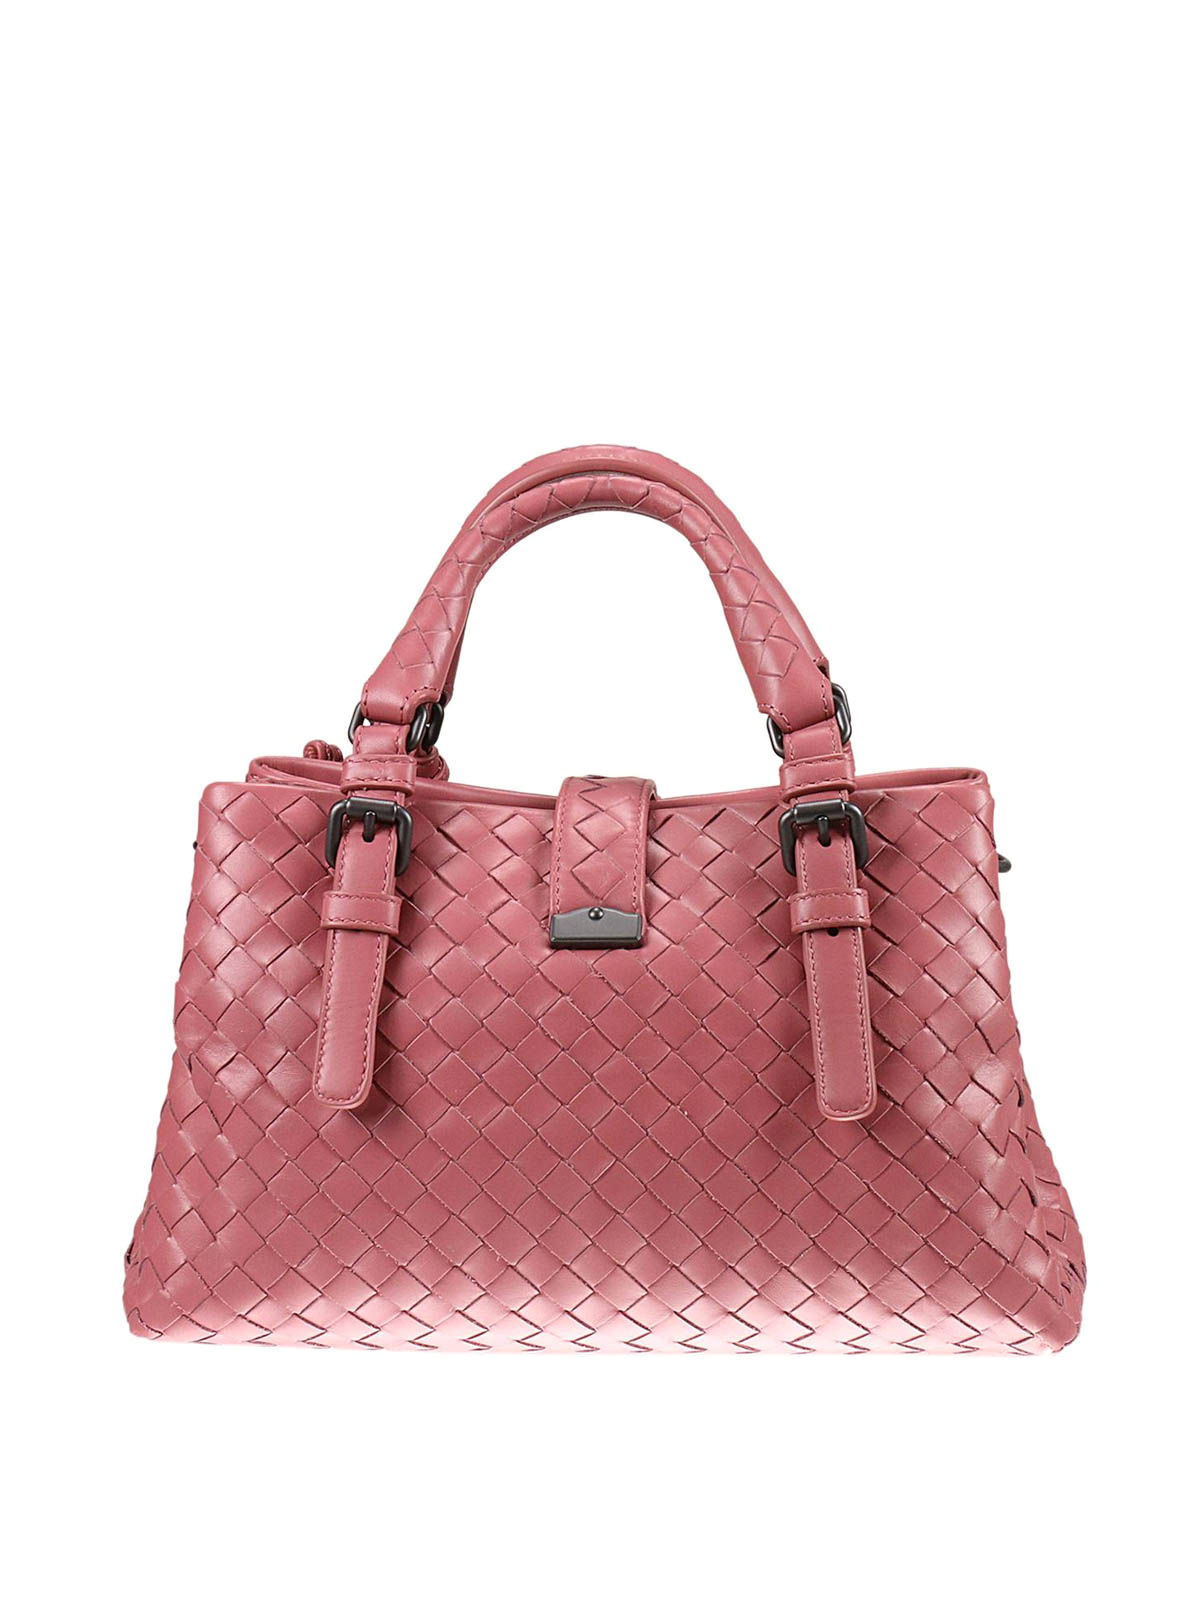 Bottega Veneta Roma Mini Shoulder Bag in Pink Intrecciato Leather